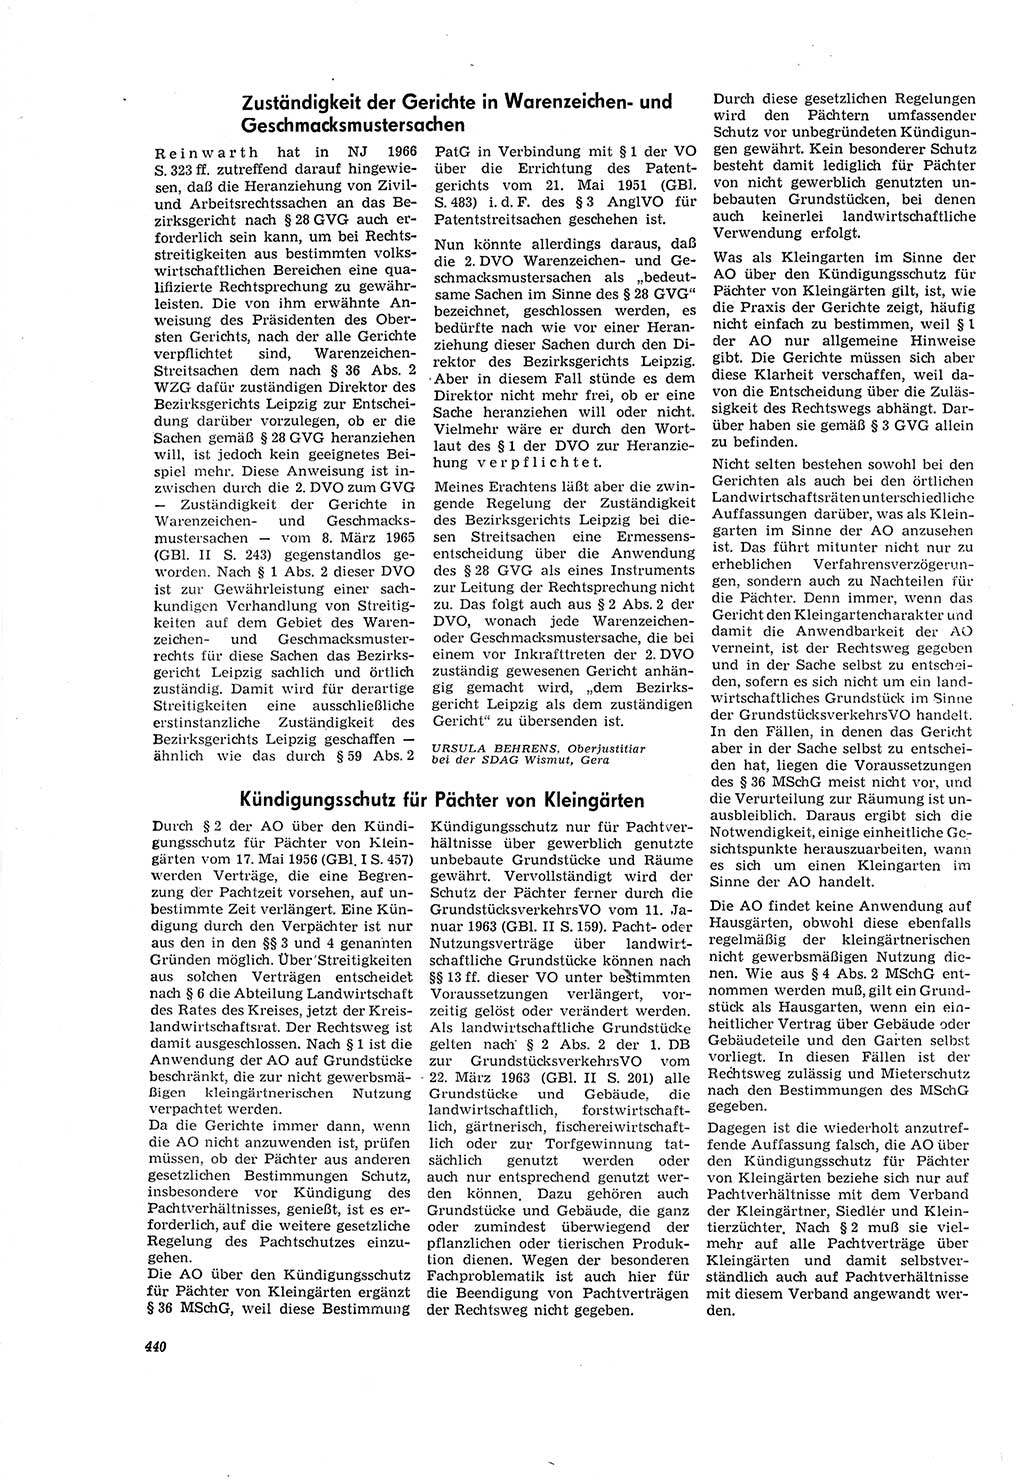 Neue Justiz (NJ), Zeitschrift für Recht und Rechtswissenschaft [Deutsche Demokratische Republik (DDR)], 20. Jahrgang 1966, Seite 440 (NJ DDR 1966, S. 440)